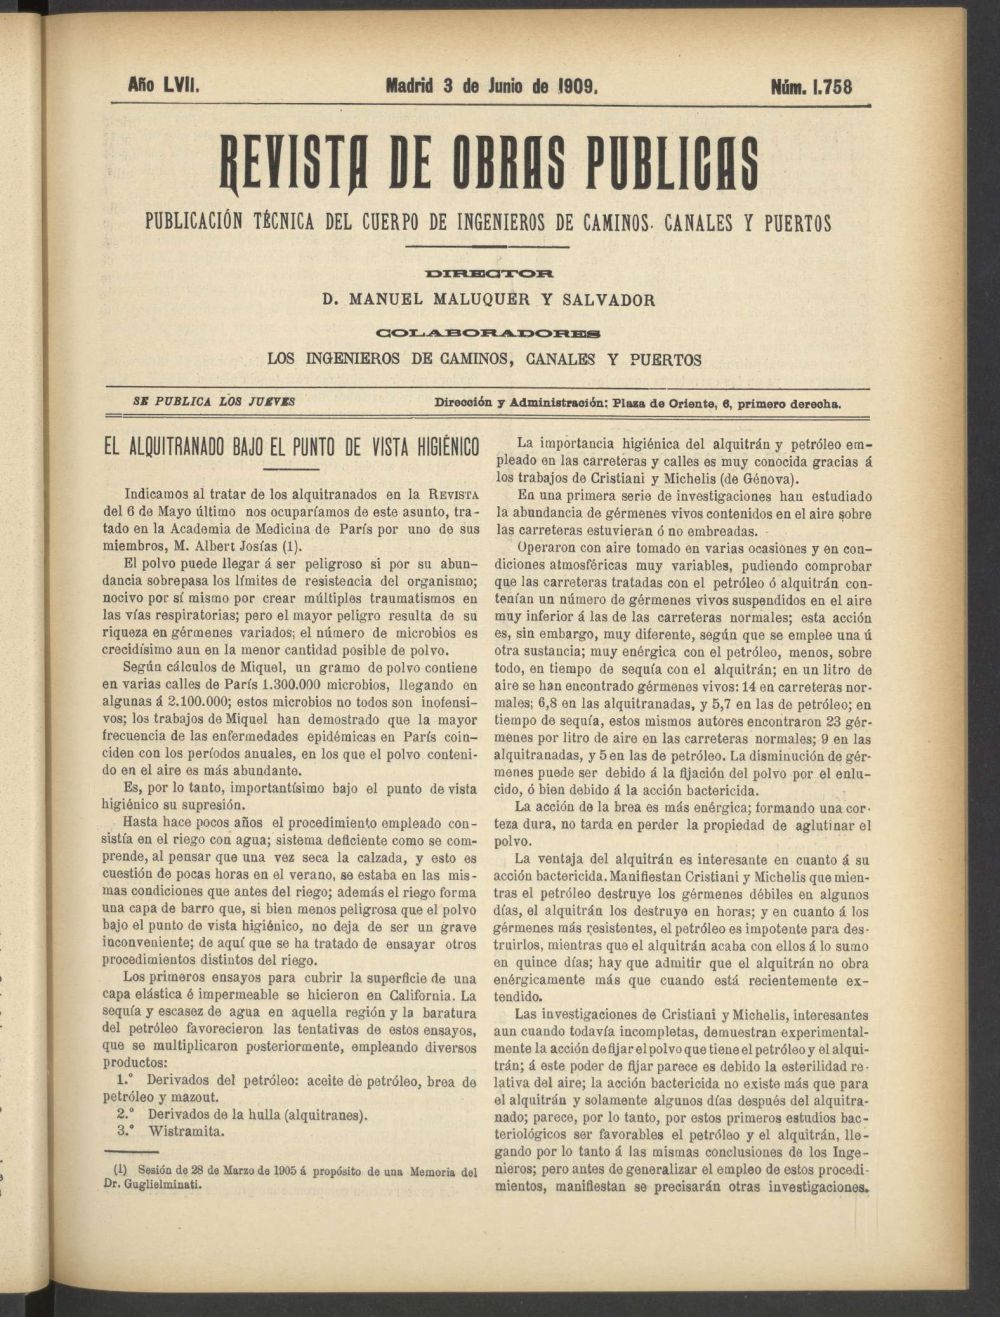 Revista de obras pblicas del 3 de junio de 1909